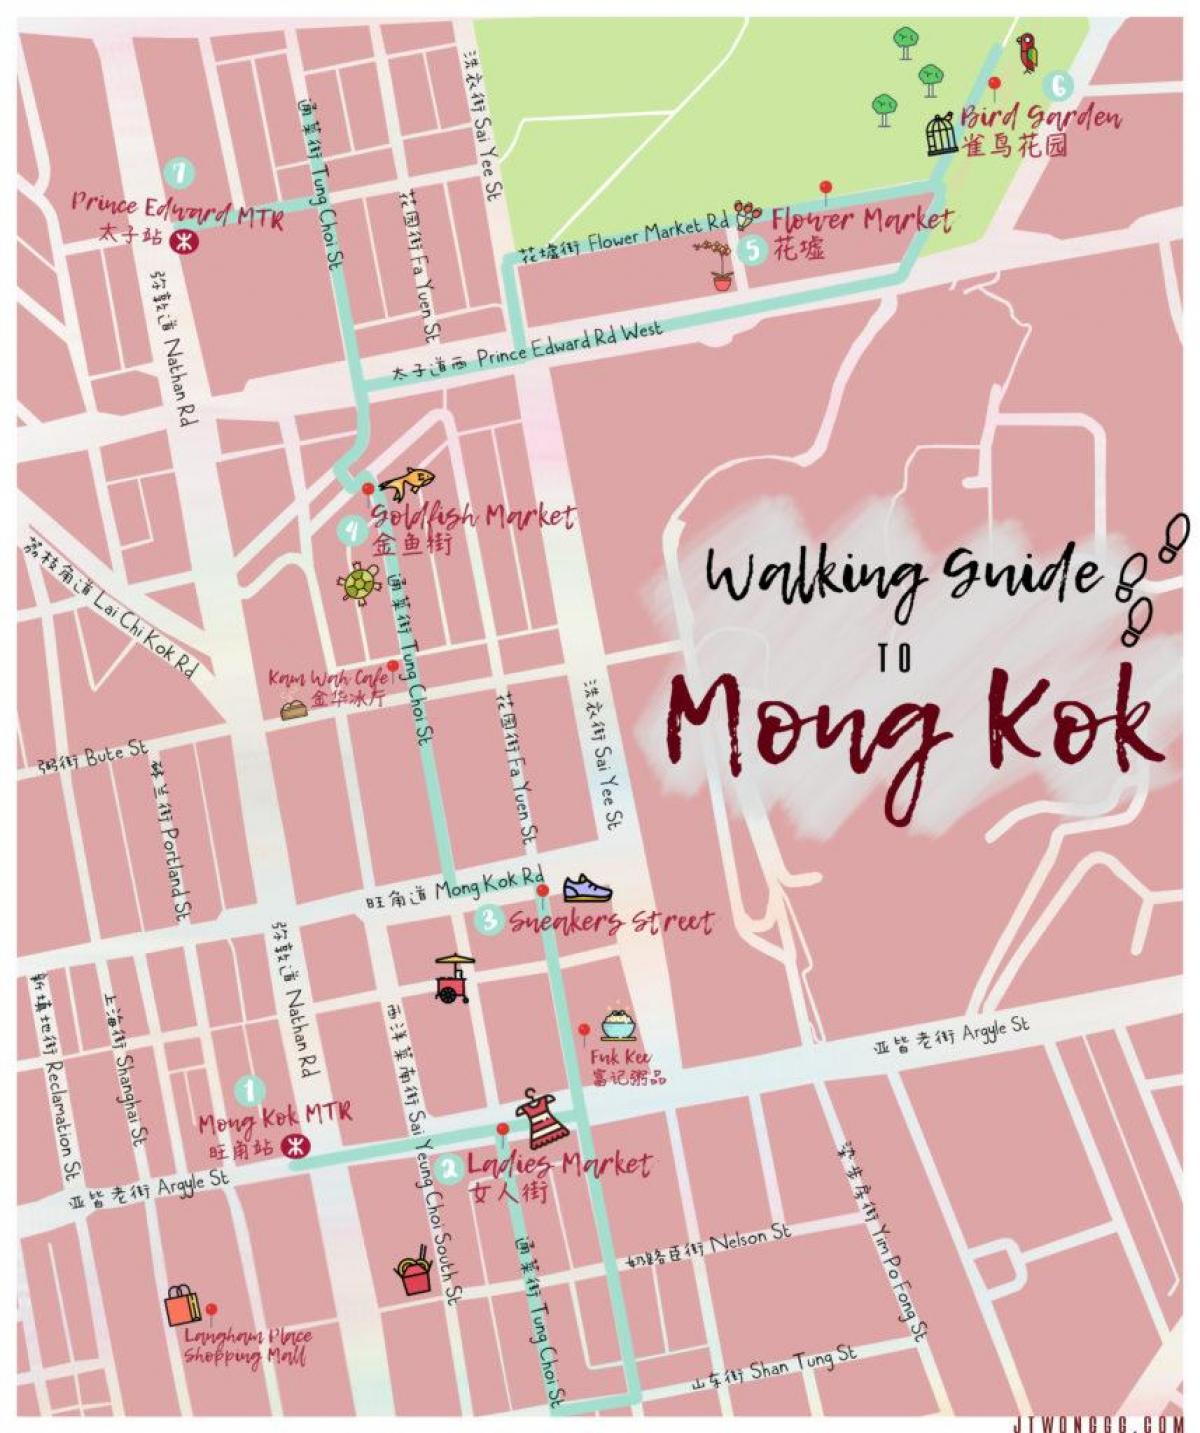 نقشه مونگ کوک هنگ کنگ